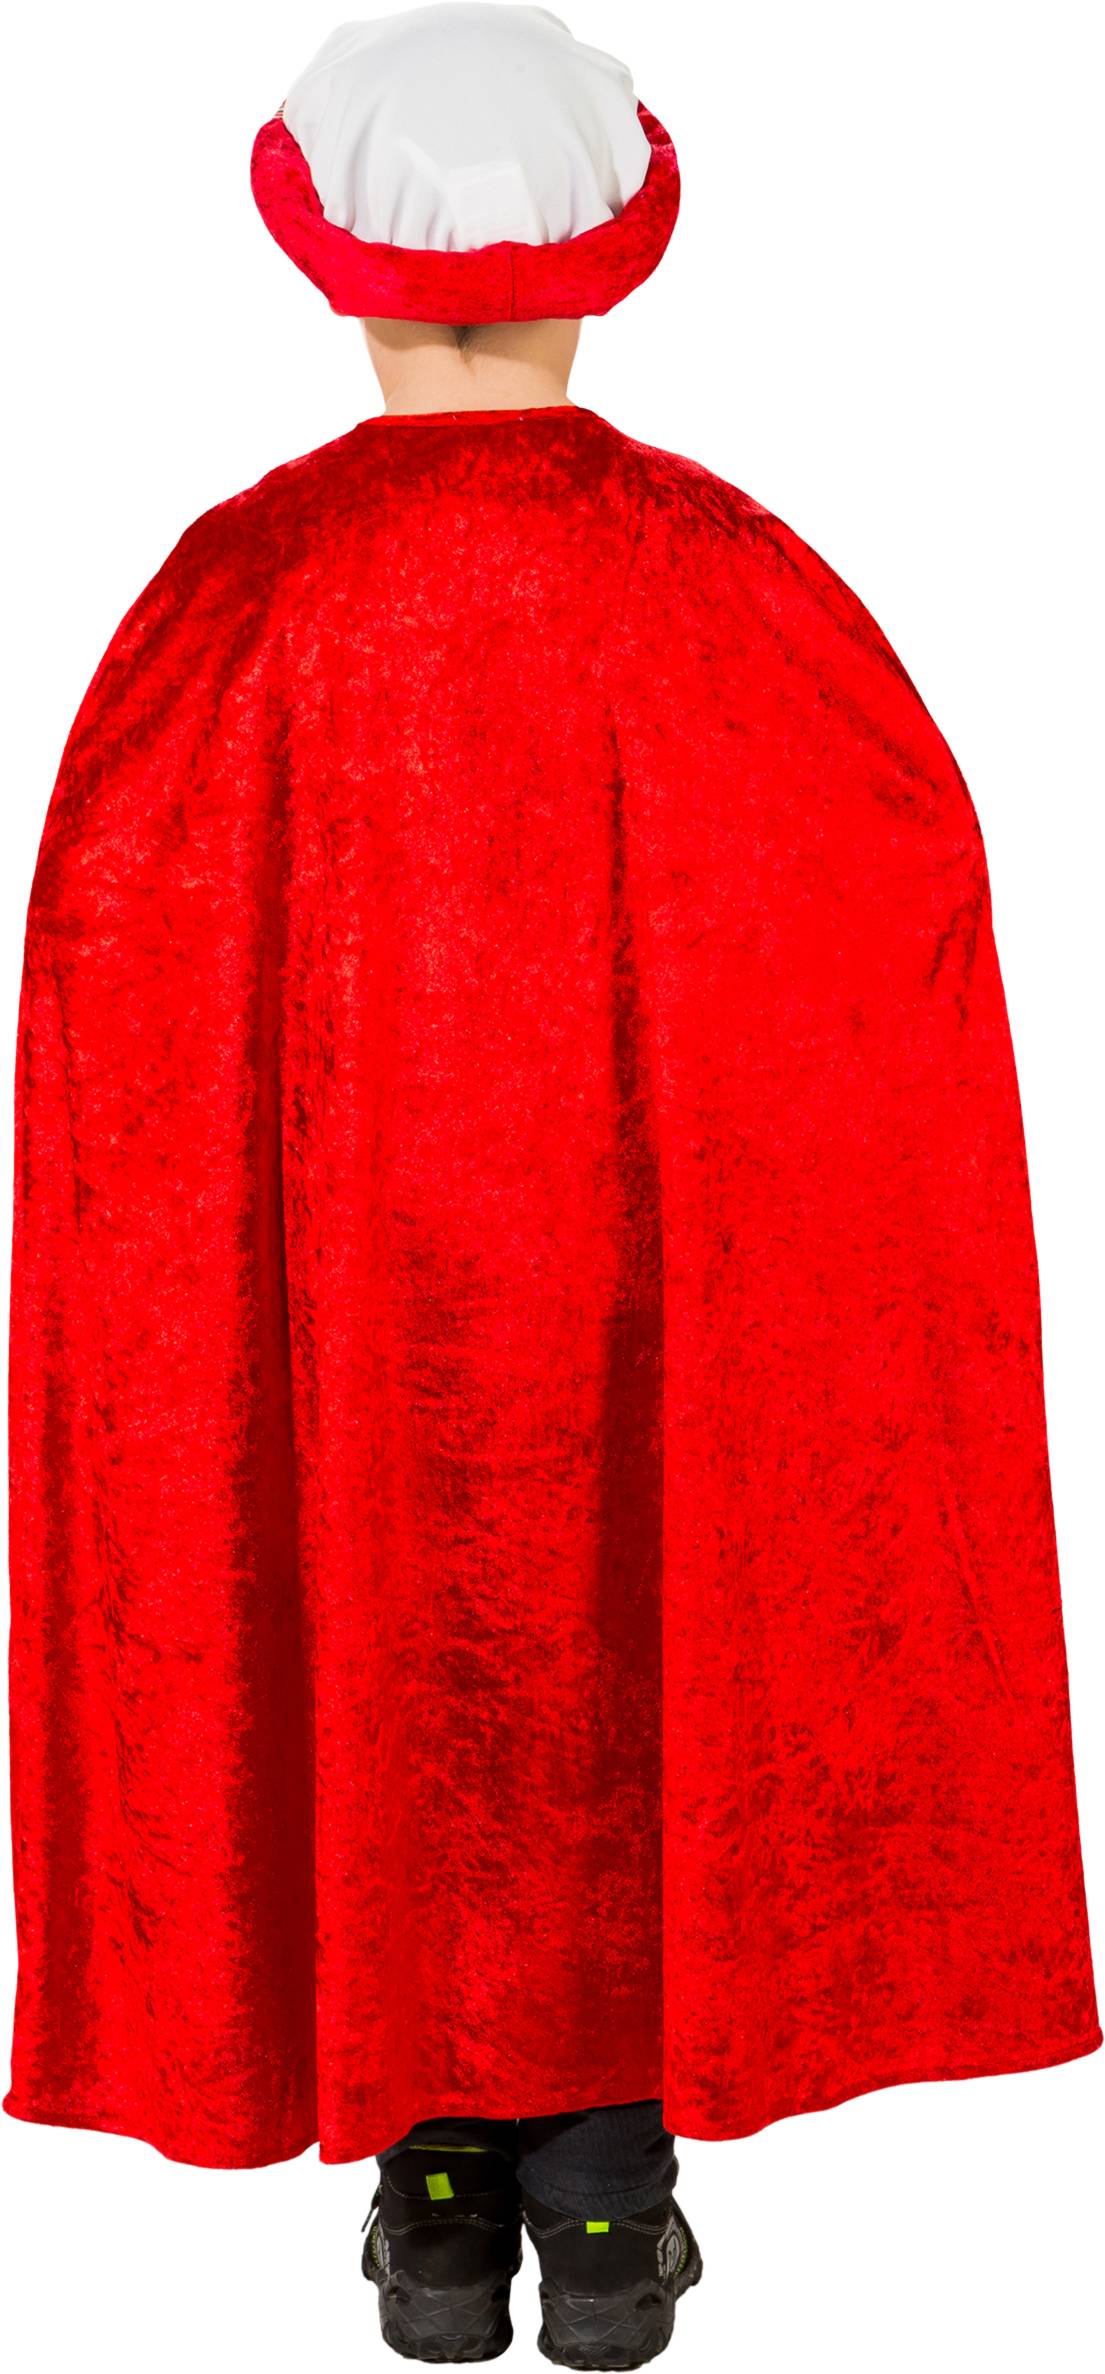 Balthazar cape, red for children 